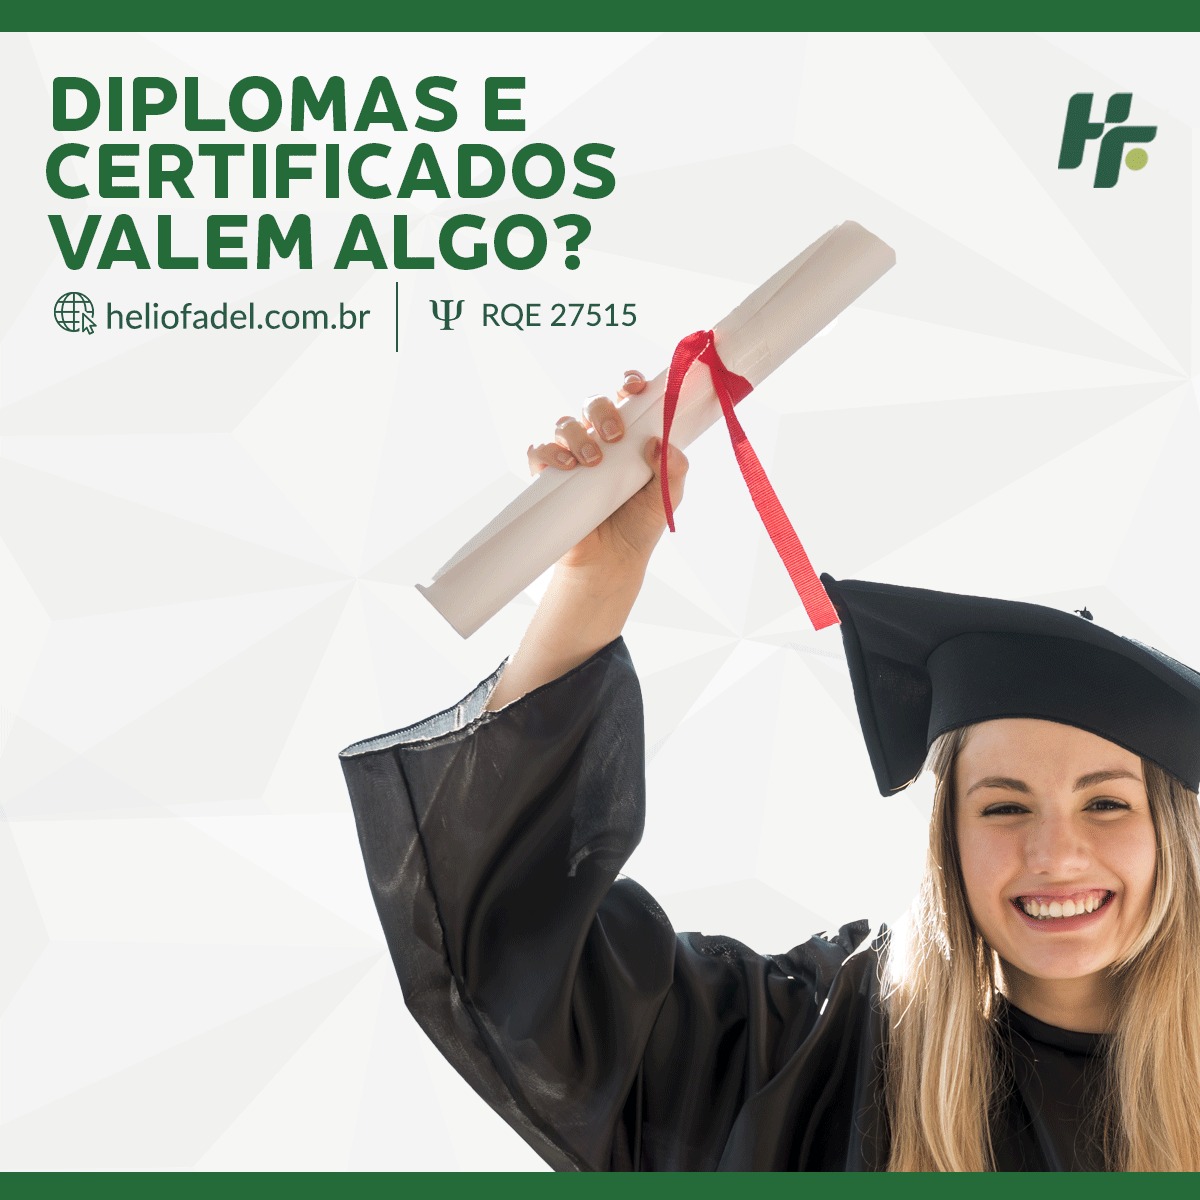 Diplomas e certificados - Diplomas e certificados são relevantes?